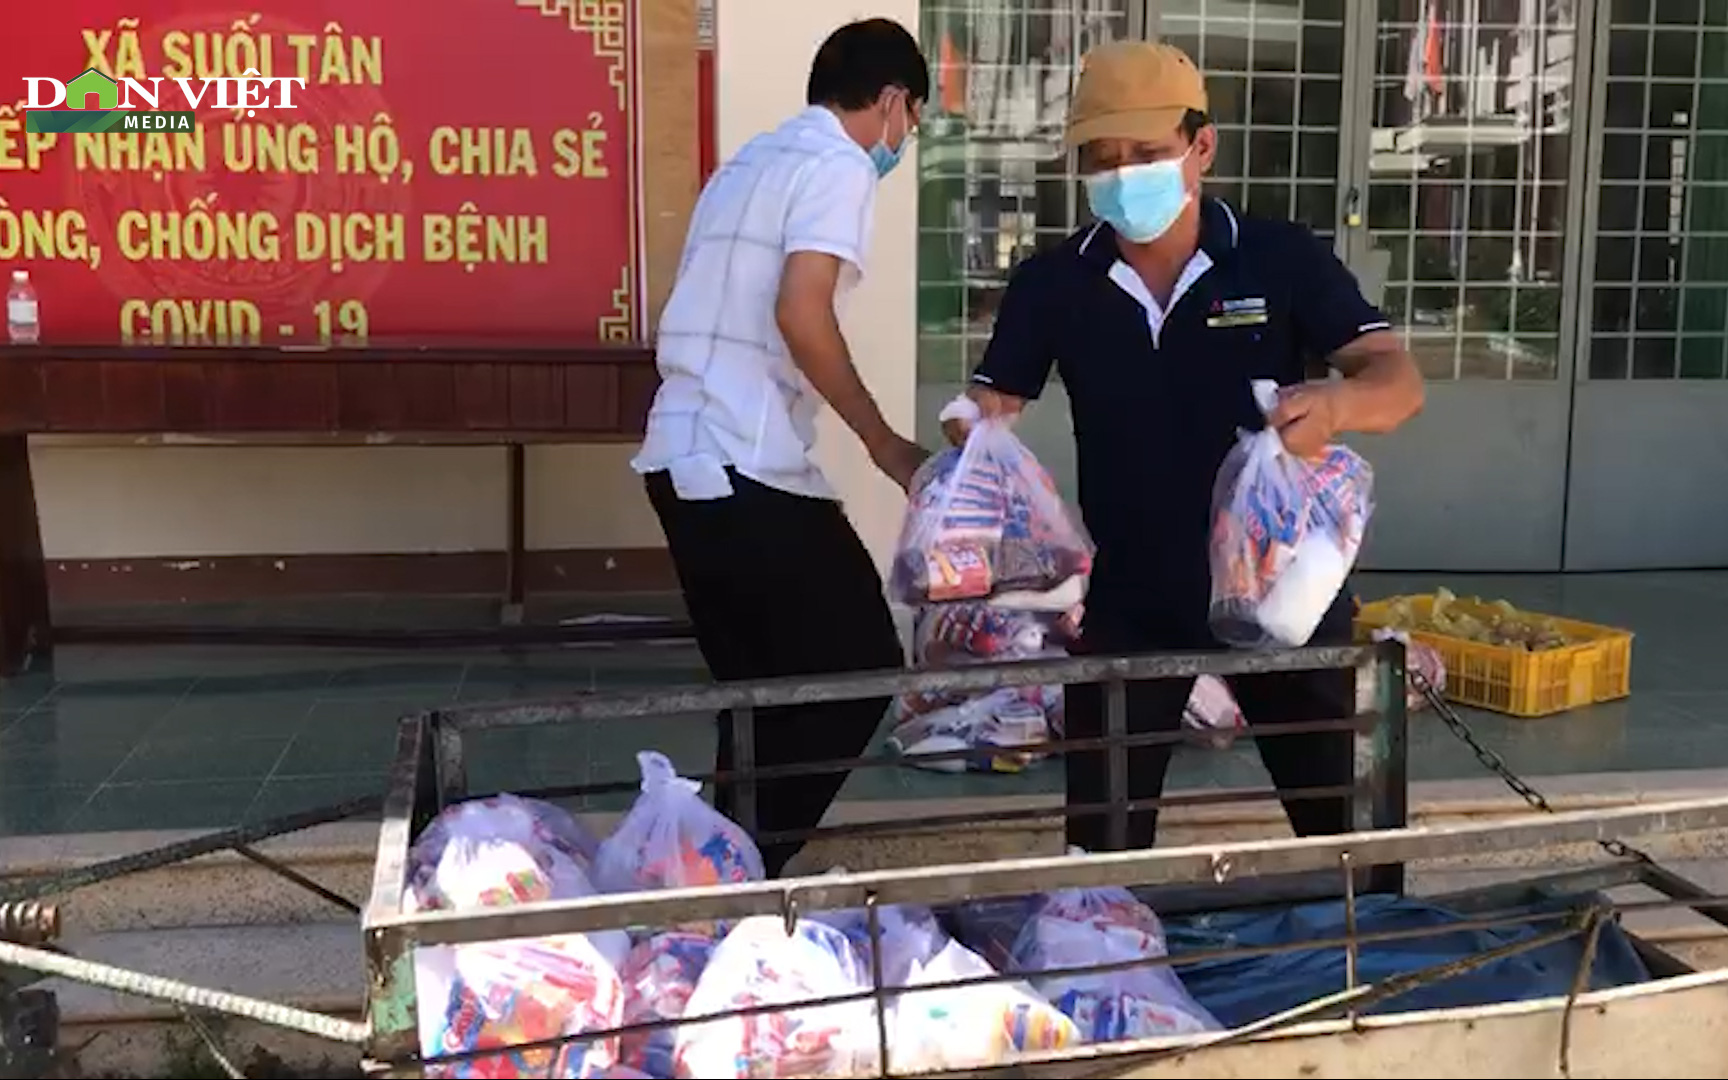 Khánh Hòa: Hội Nông dân huyện Cam Lâm tích cực “tiếp sức” cho người dân trong khu phong tỏa